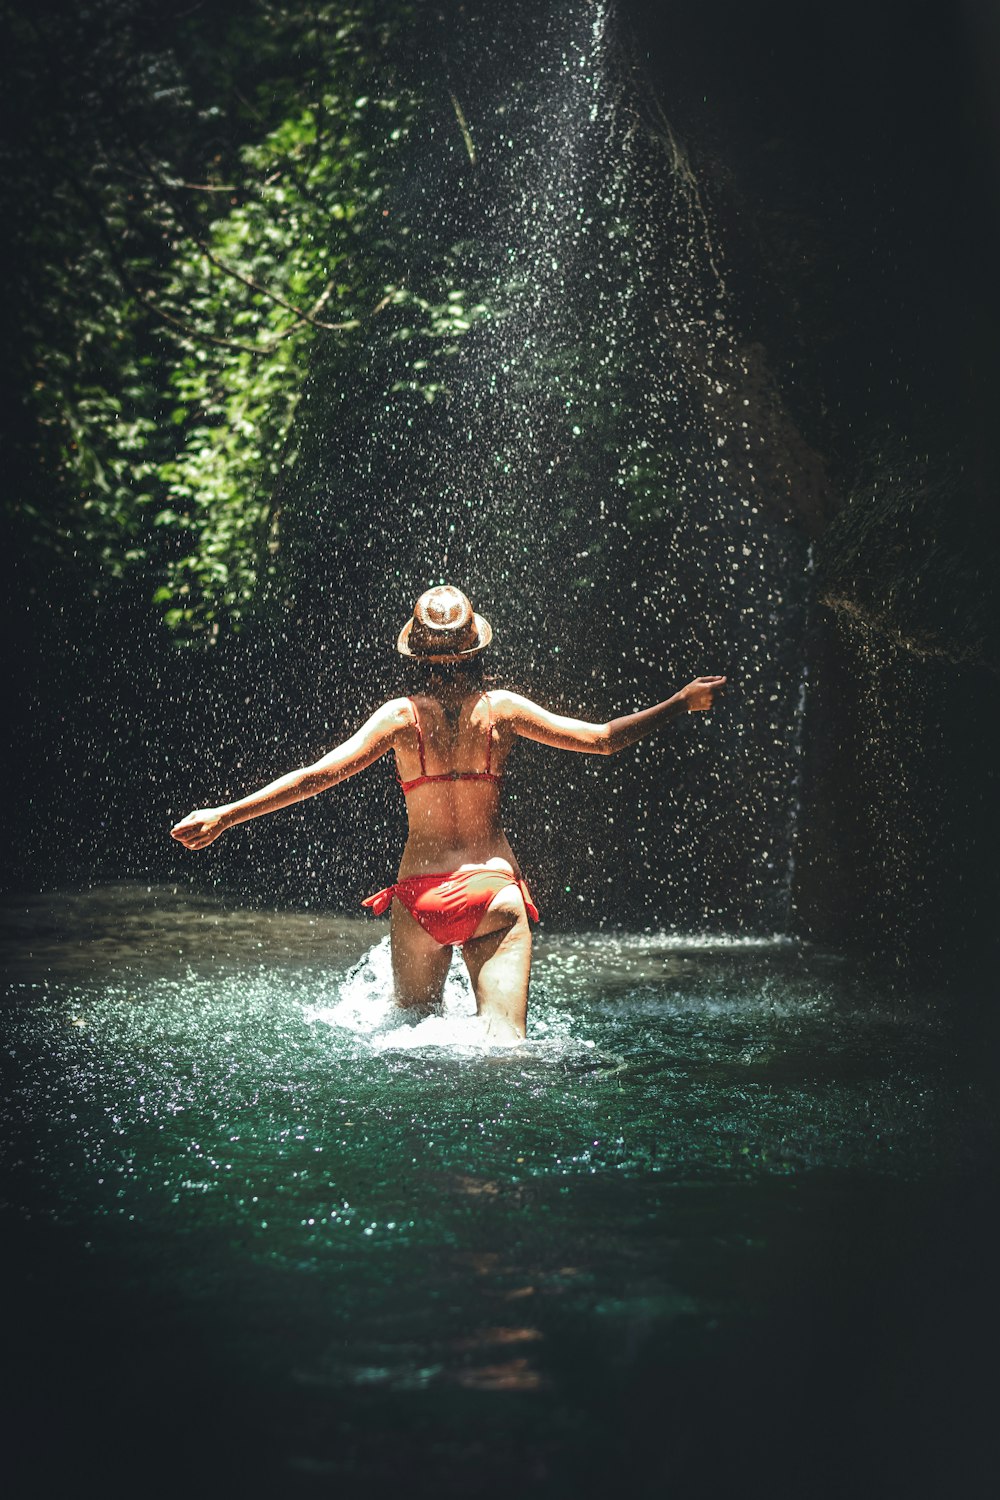 woman walking on body of water wearing red bikini